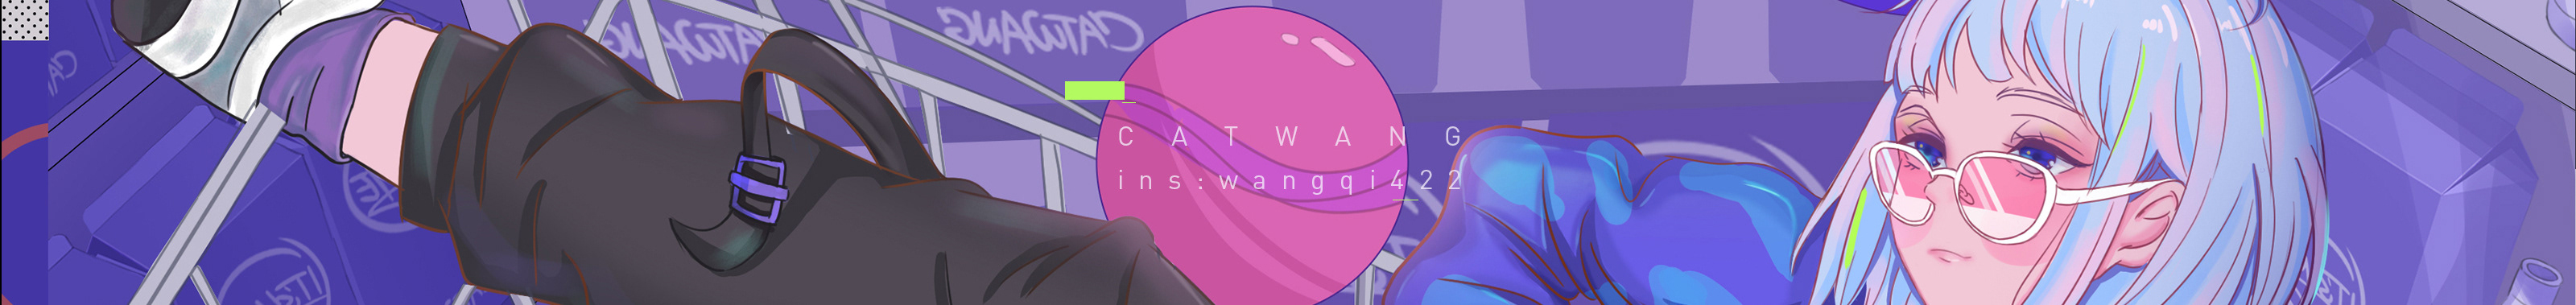 小柒 catwang's profile banner